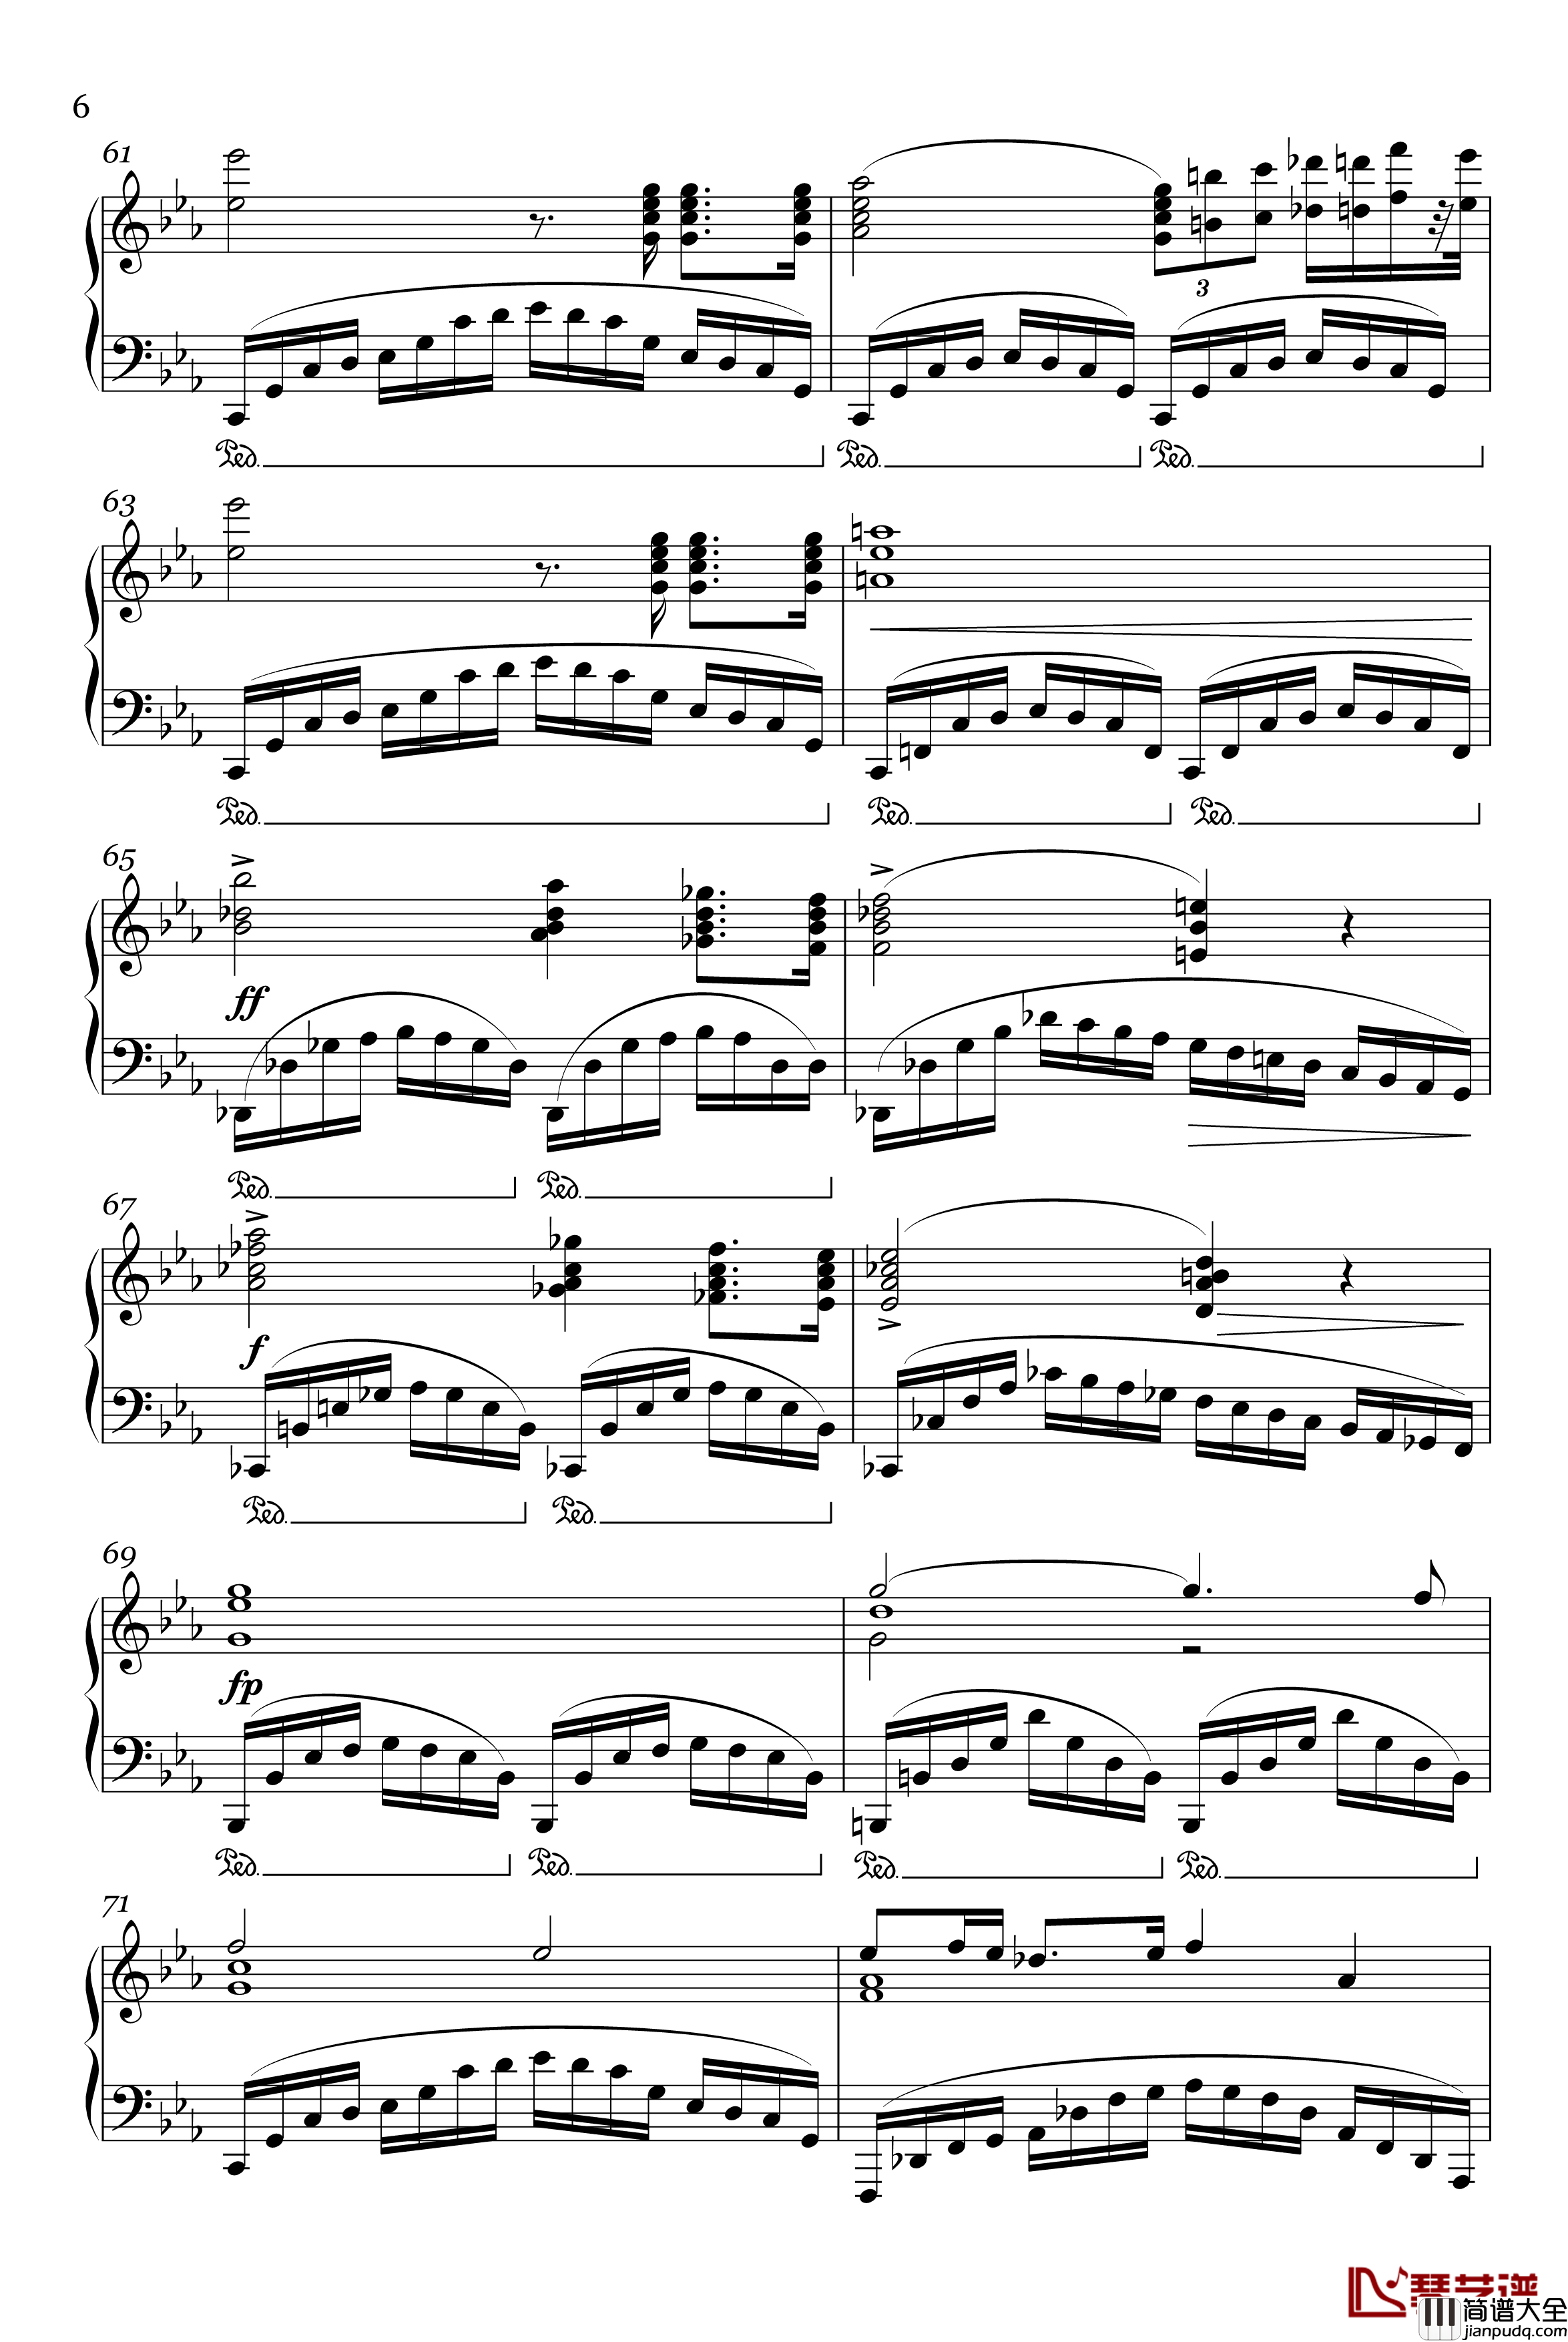 革命练习曲Op.10,_No.12钢琴谱_肖邦_chopin